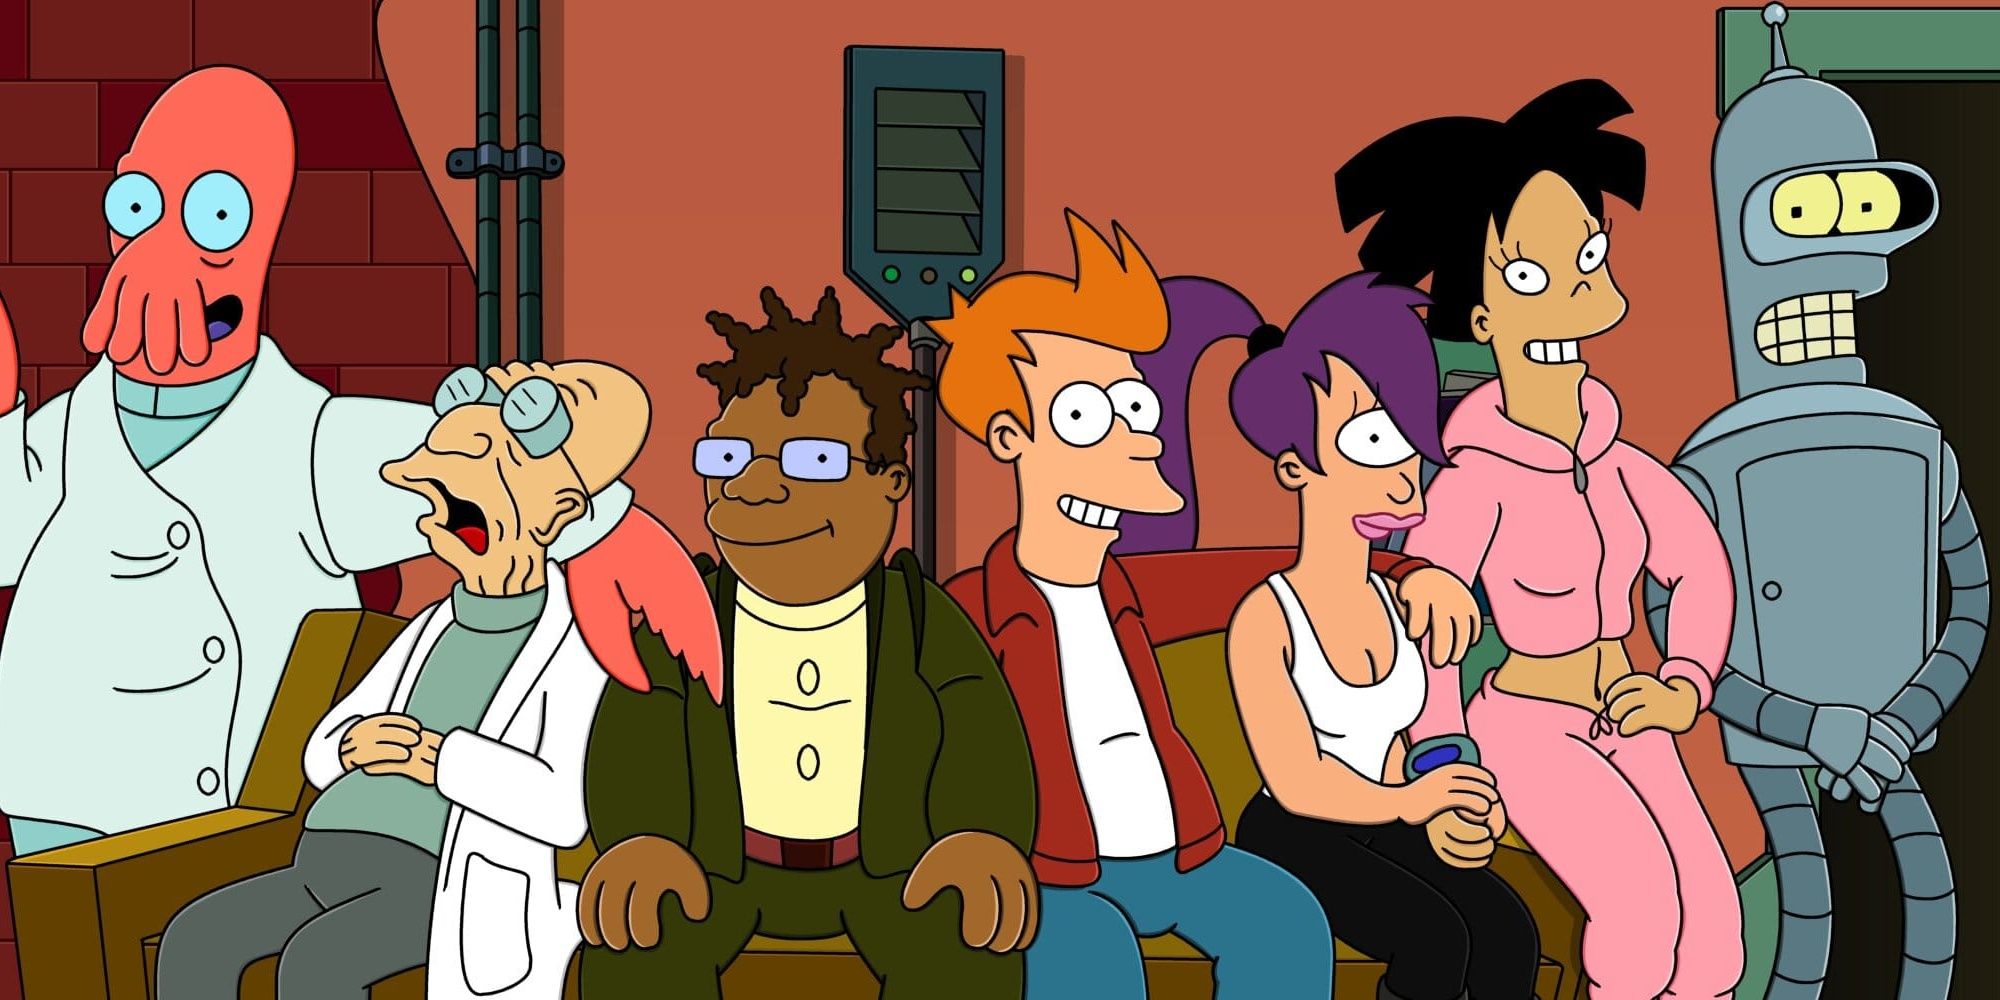 The animated cast of Futurama